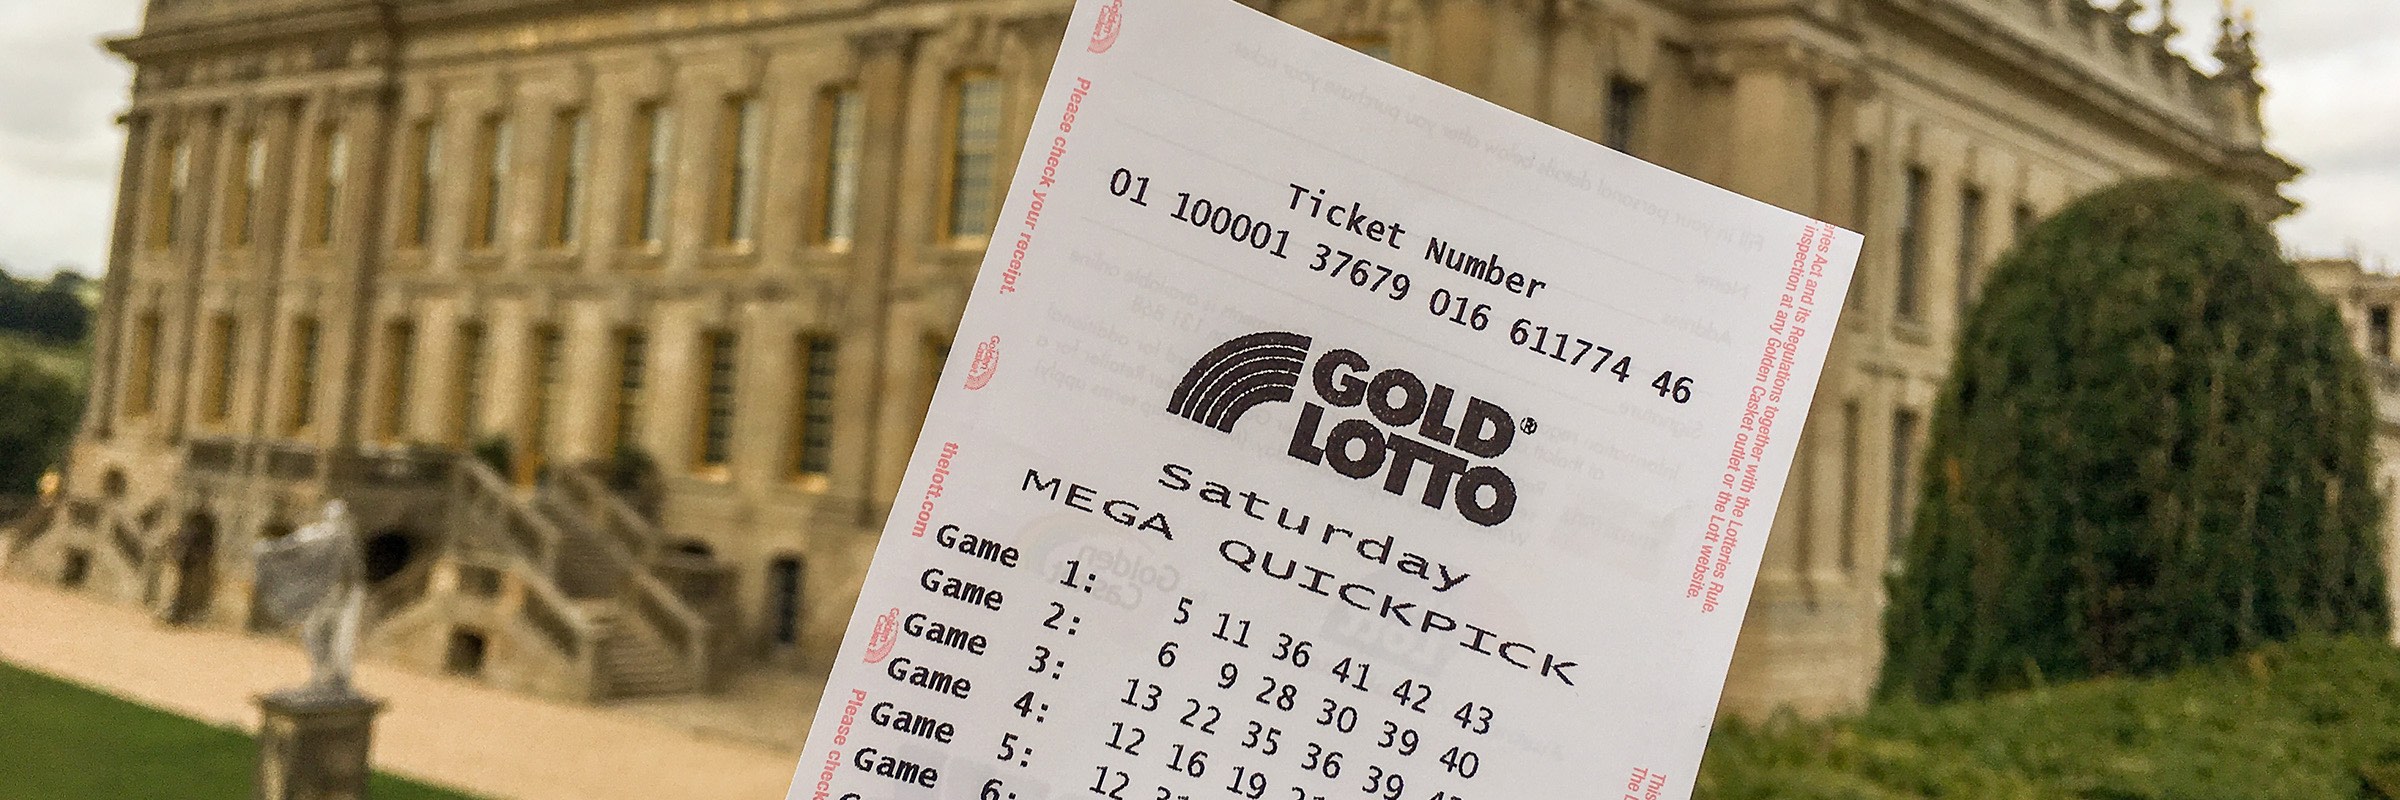 saturday gold lotto rules